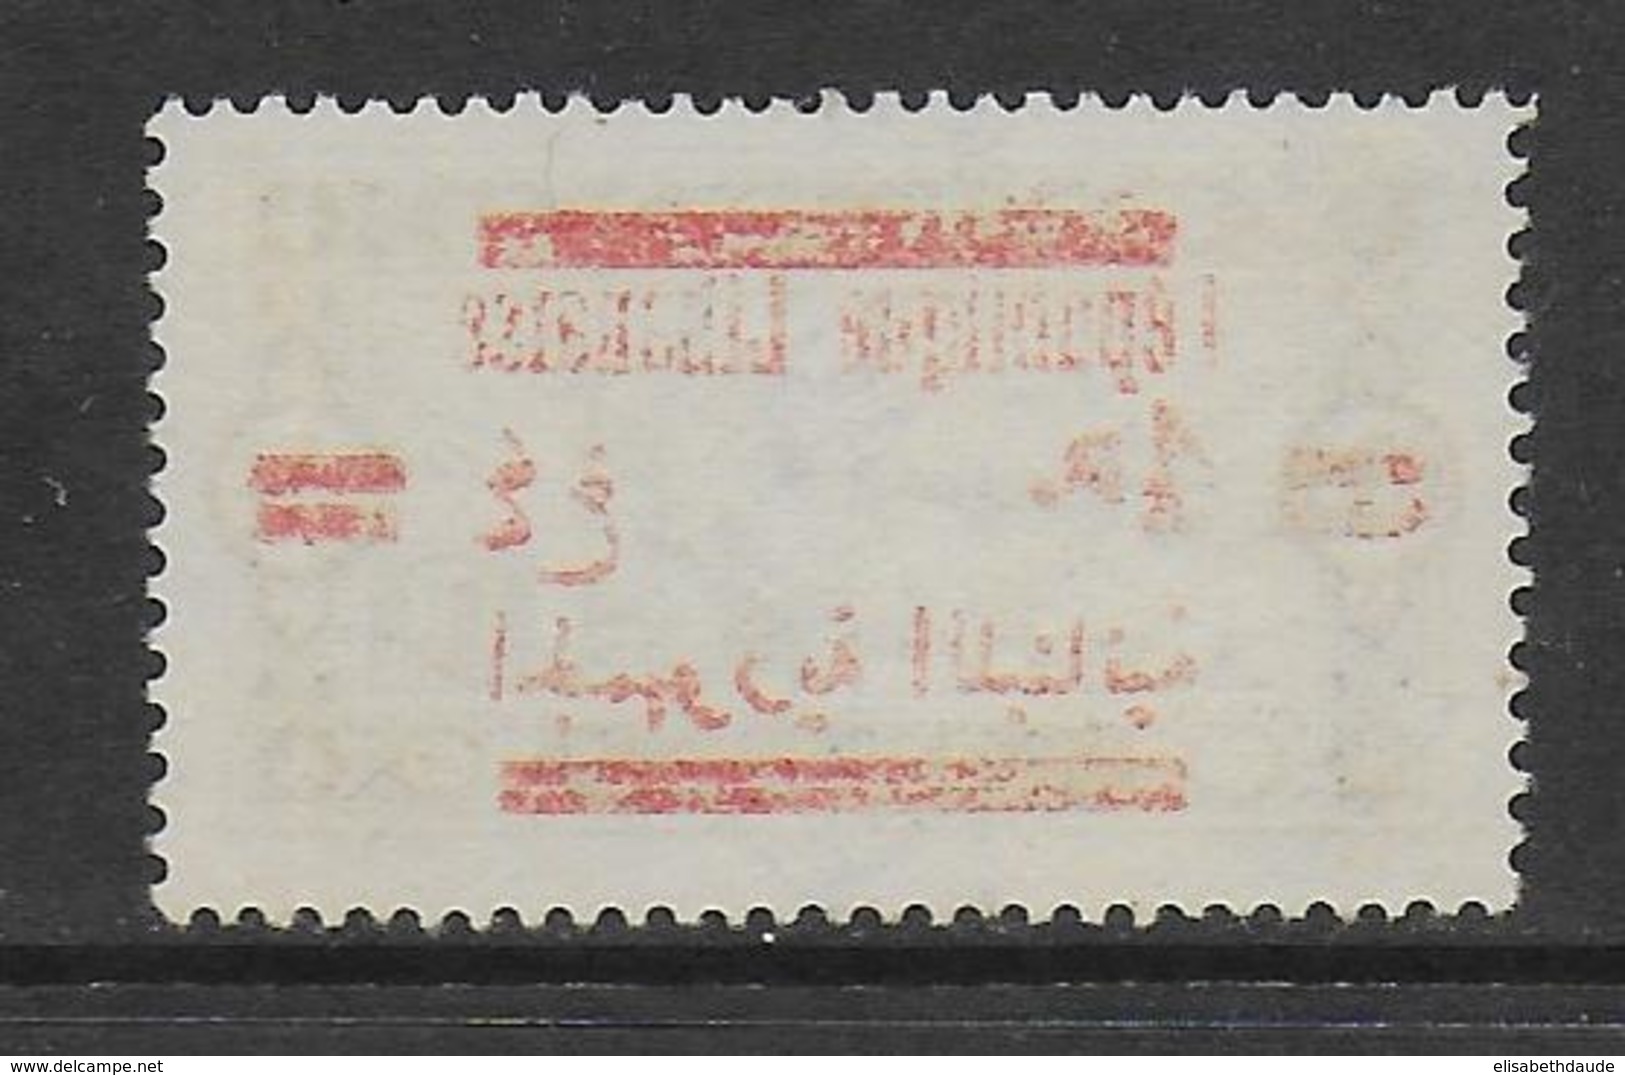 GRAND-LIBAN - 1928 - YVERT N°119 SURCHARGE RECTO-VERSO OBLITERE - COTE = 80 EUR. - Gebruikt